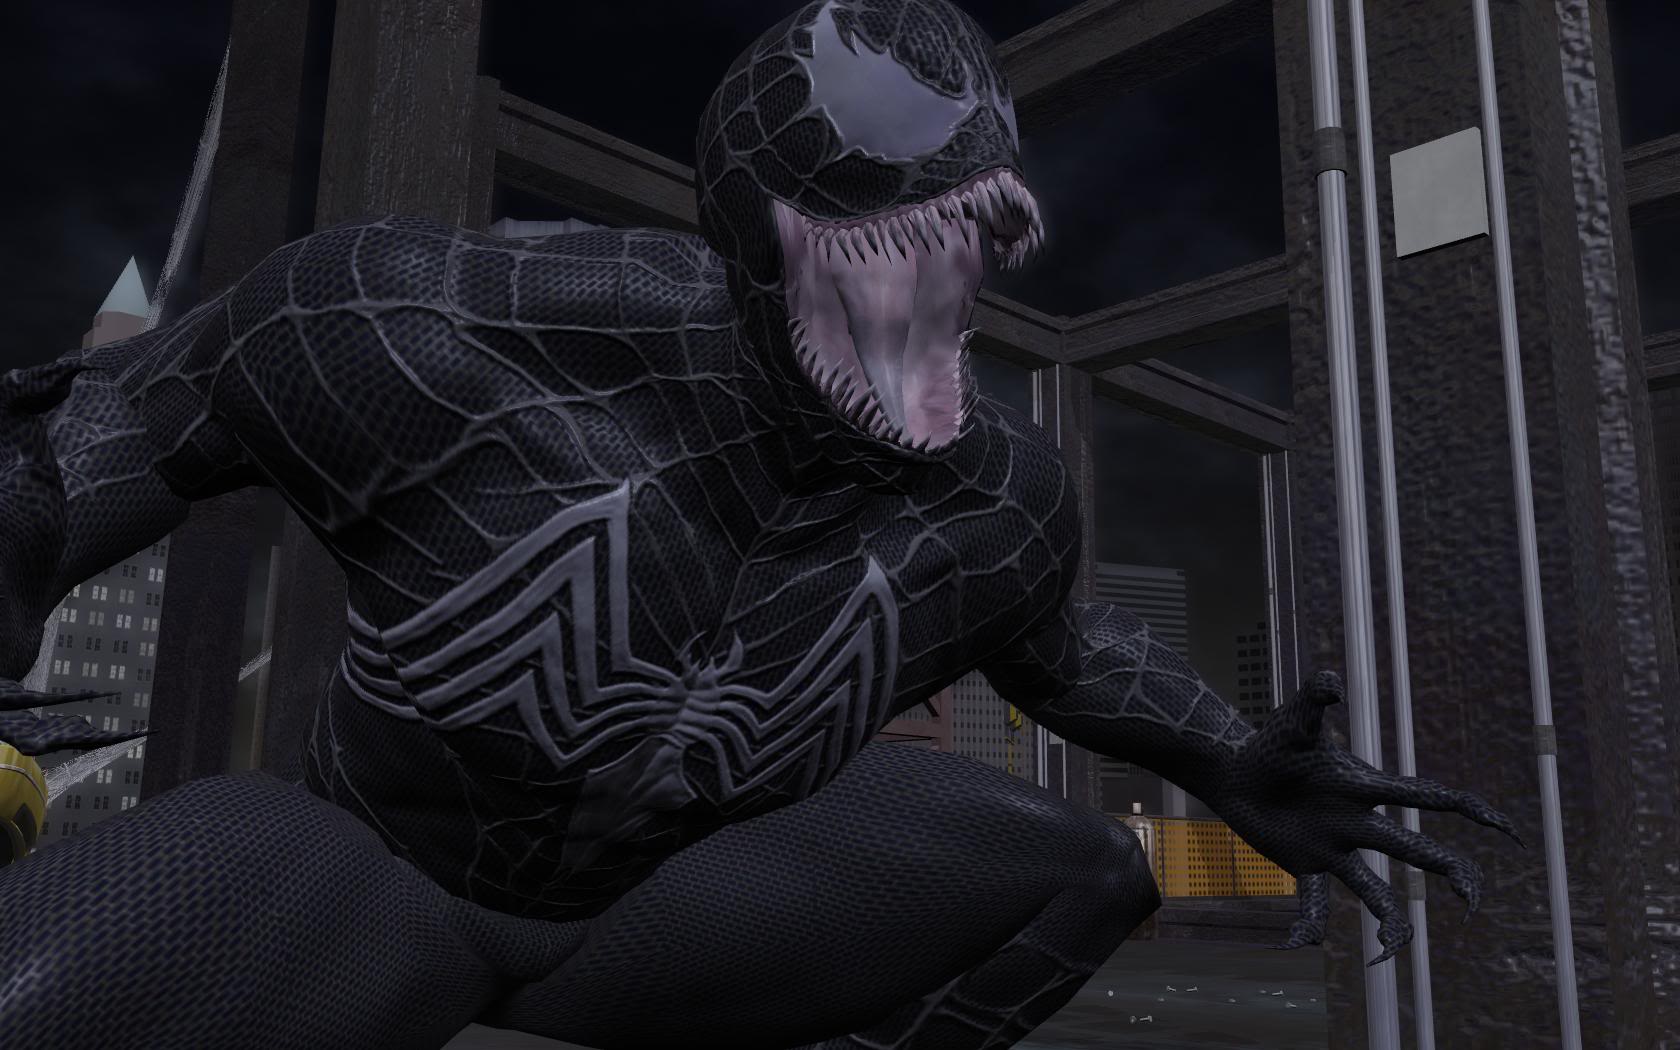 Паук 3.3 5. Веном человек паук 3. Игрушка человек паук 3 2007 Веном. Человек паук враг в отражении Веном. Venom Сэм Рэйми человек паук 3.